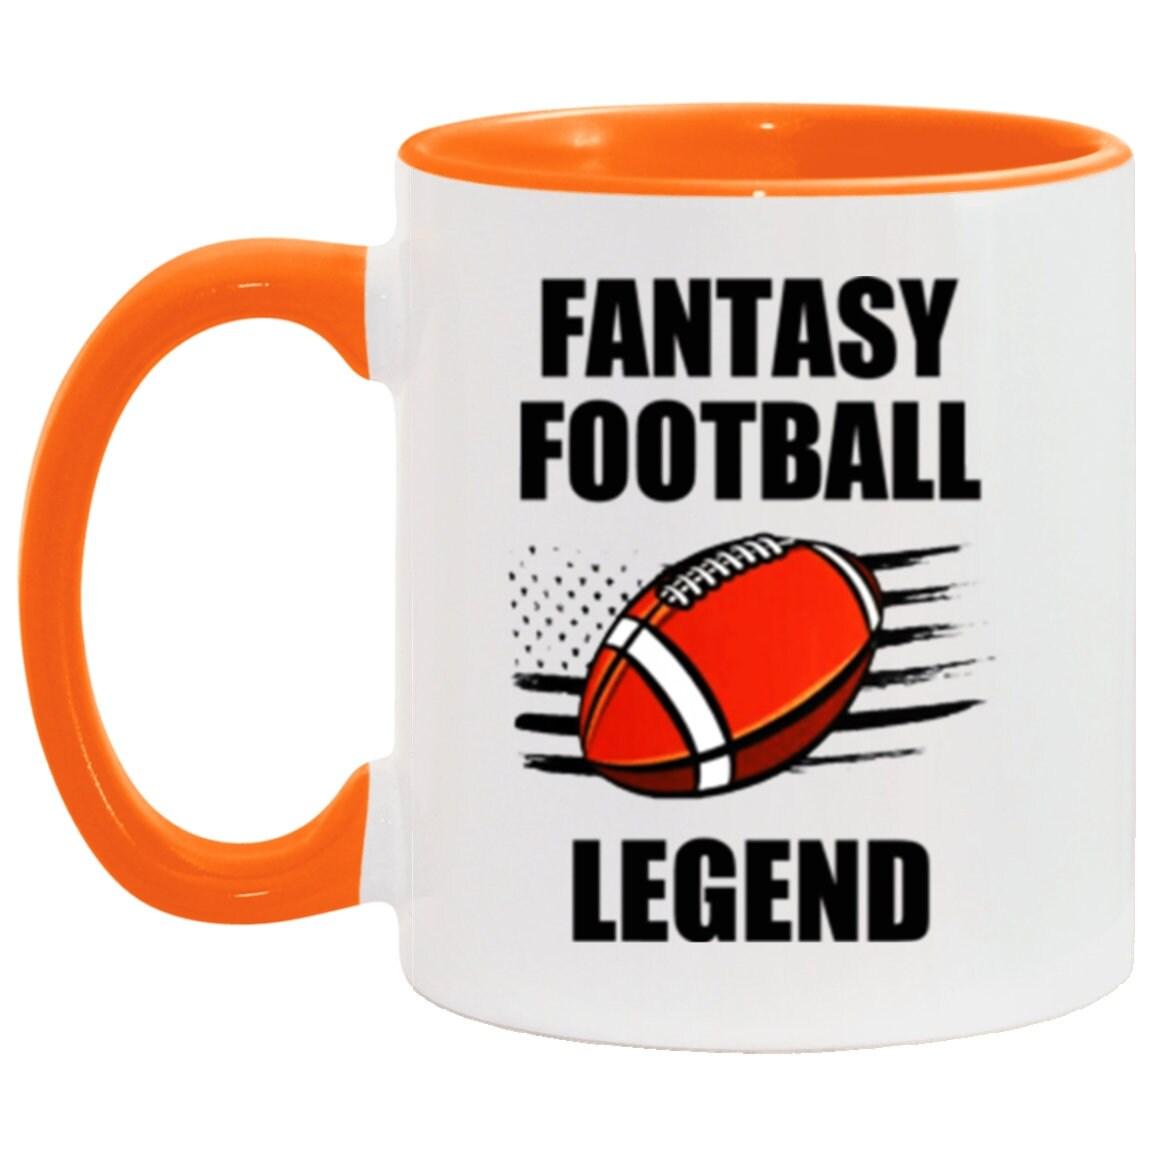 Taza con acento de leyenda del fútbol de fantasía, taza de fútbol FFL divertida, regalo de taza de deportes de fantasía, regalo para fanáticos del fútbol de fantasía - plusminusco.com